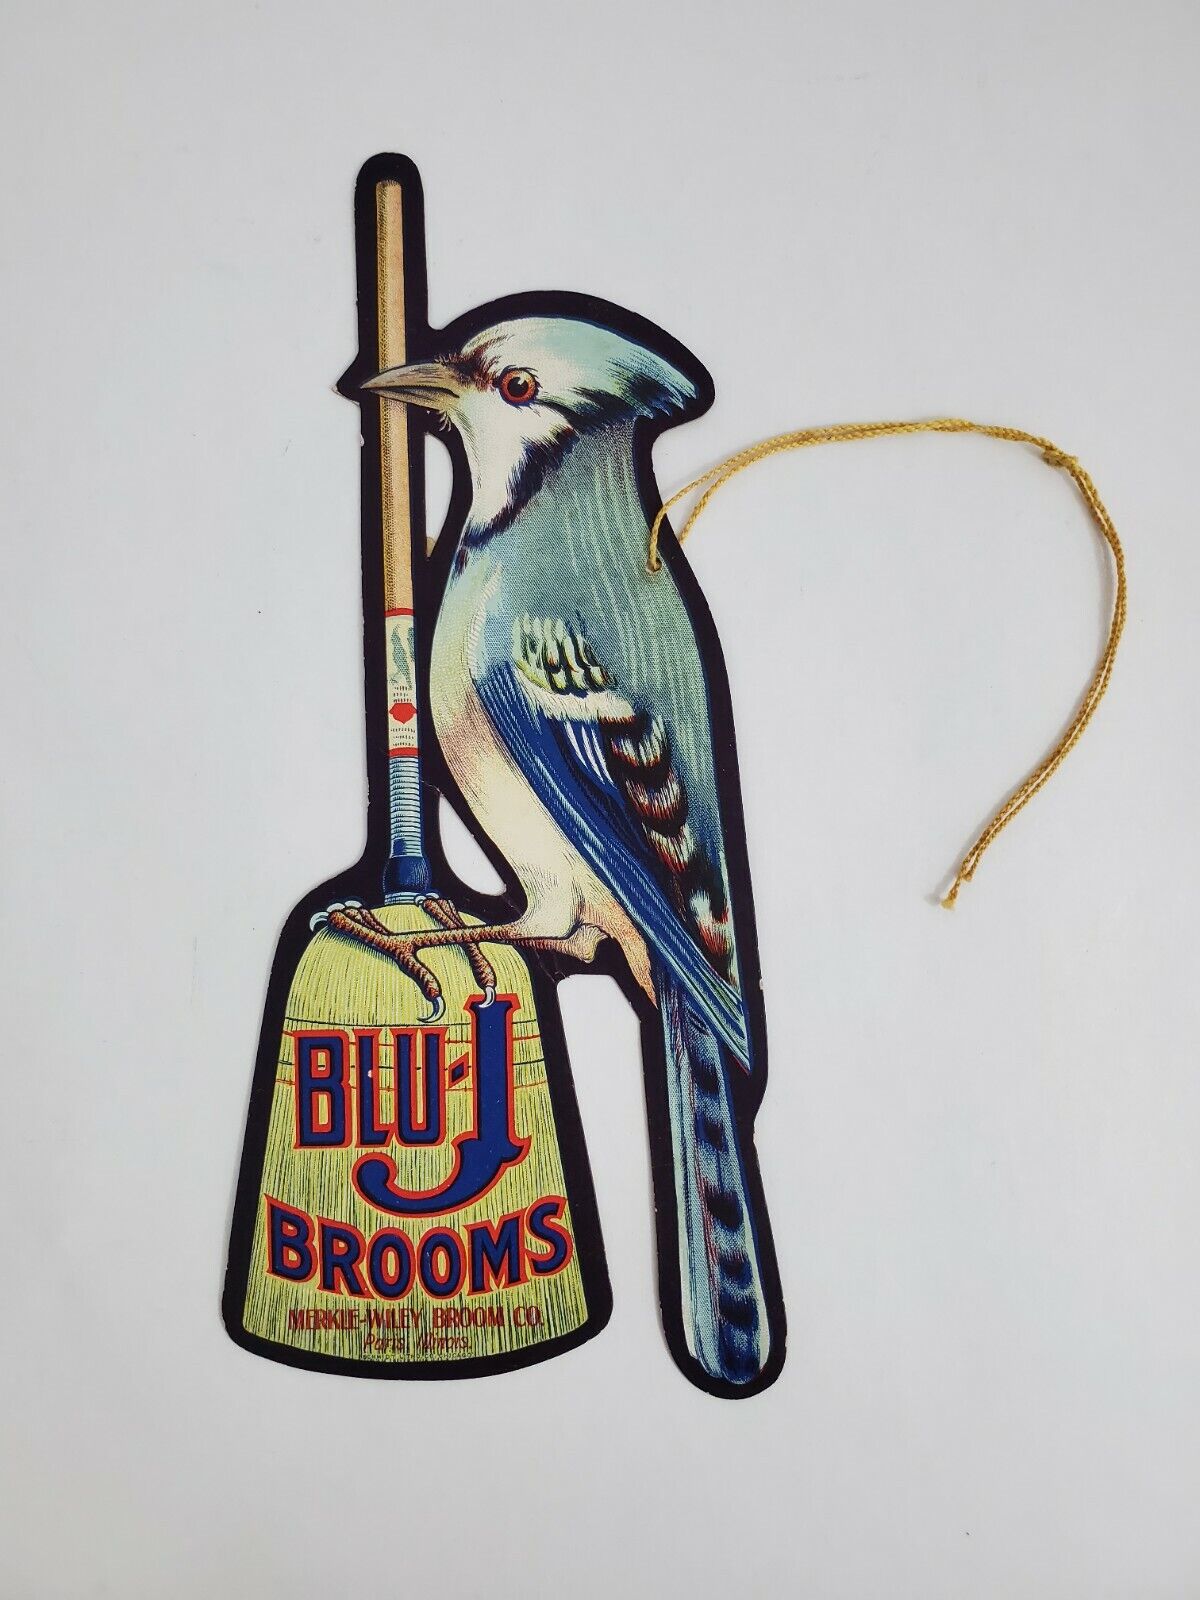 Vintage Merkle\'s Blu-J Brooms Broom Company Advertising Fan Pull Hanger 10\